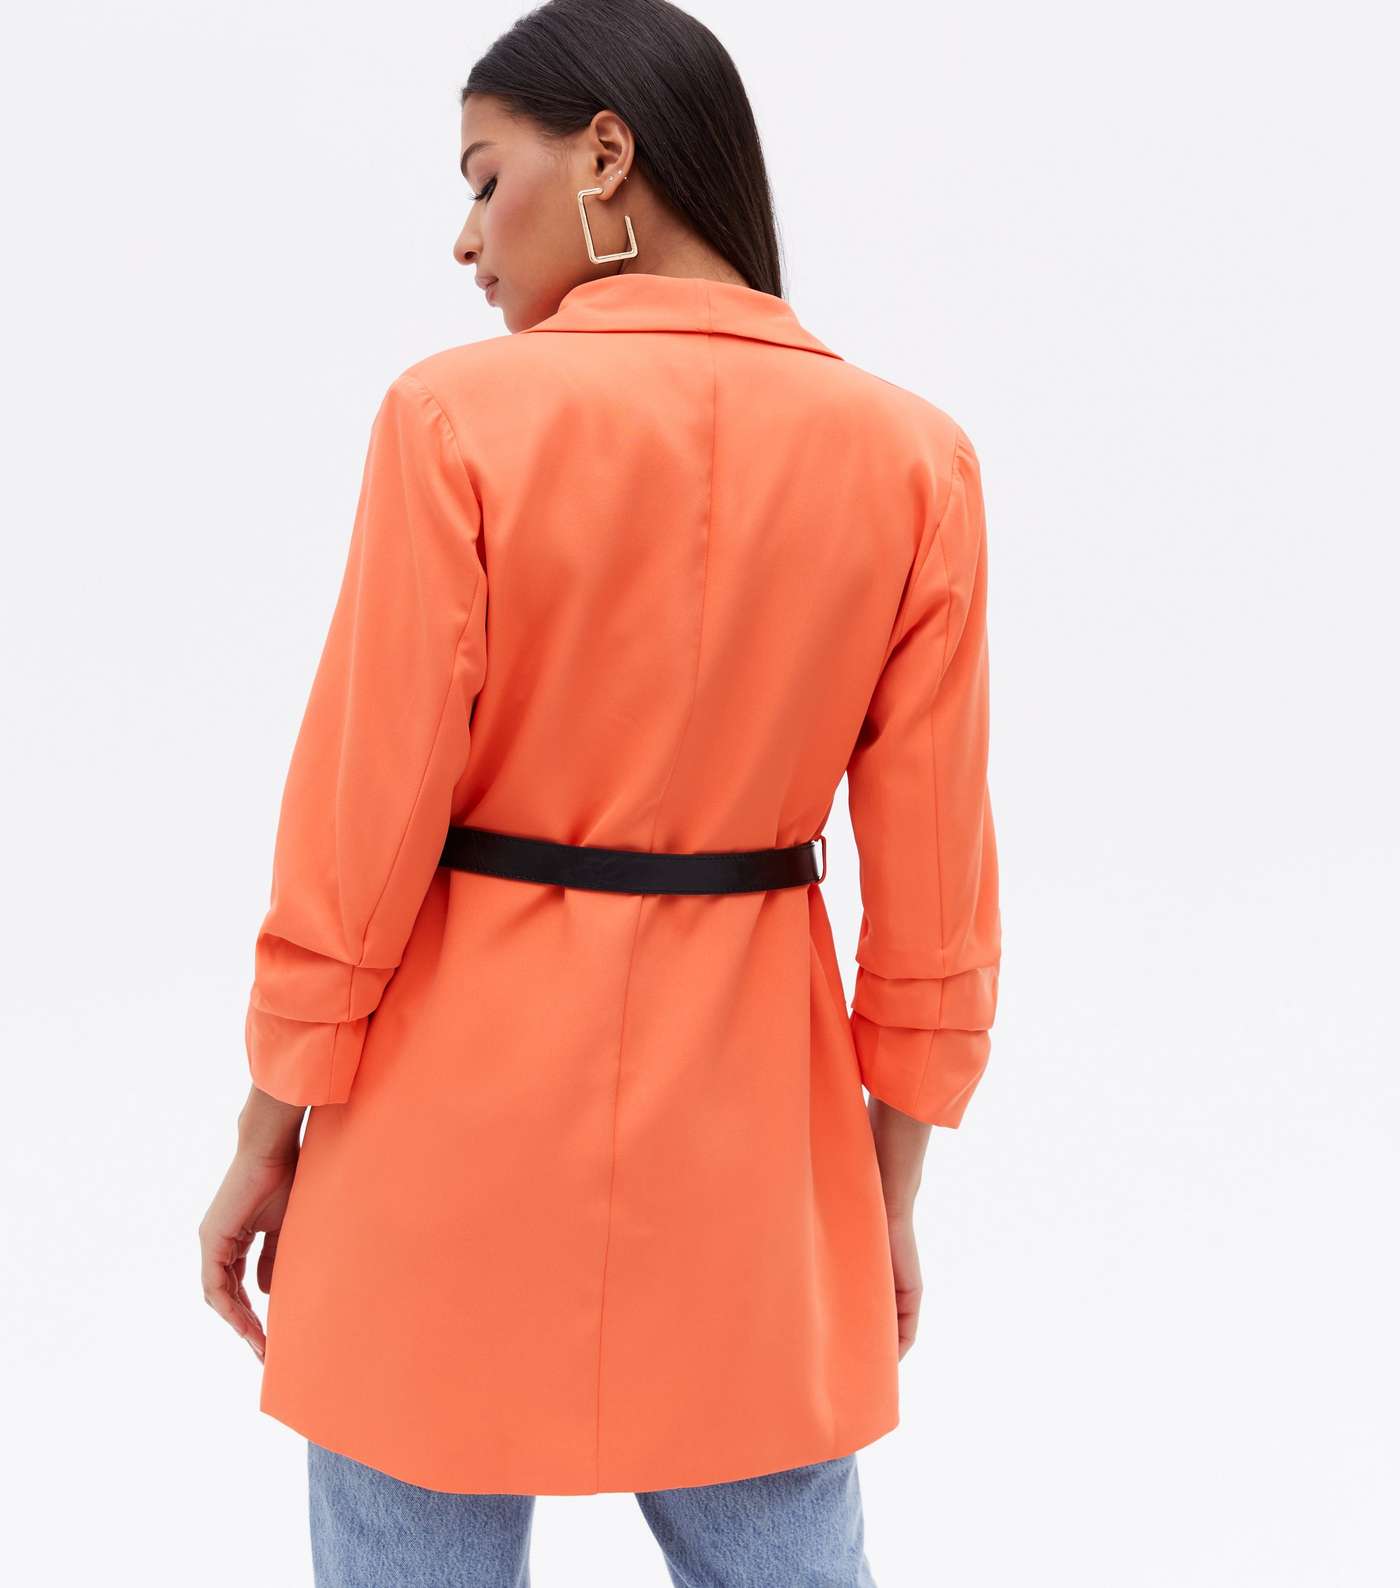 Cameo Rose Bright Orange Ruched Sleeve Long Blazer Image 4